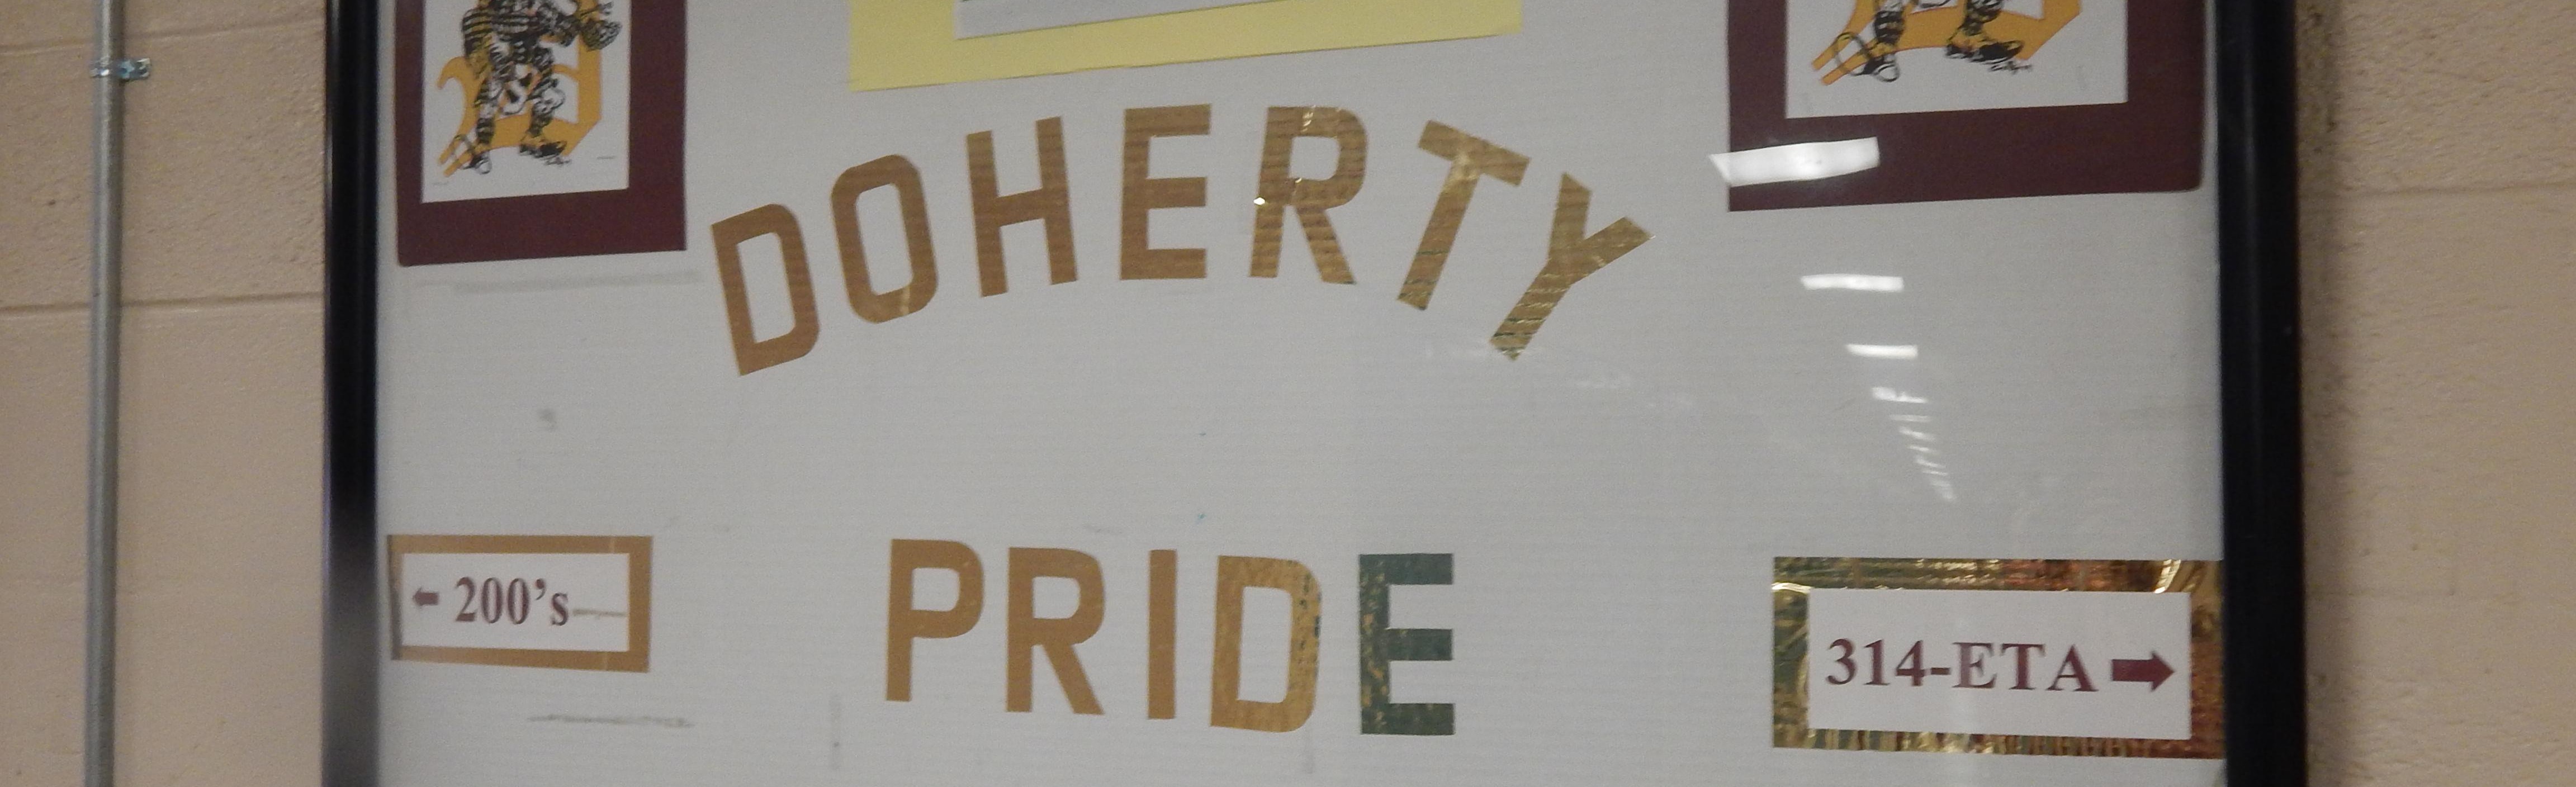 Whiteboard on the school's hallway "Doherty Pride" written on it 